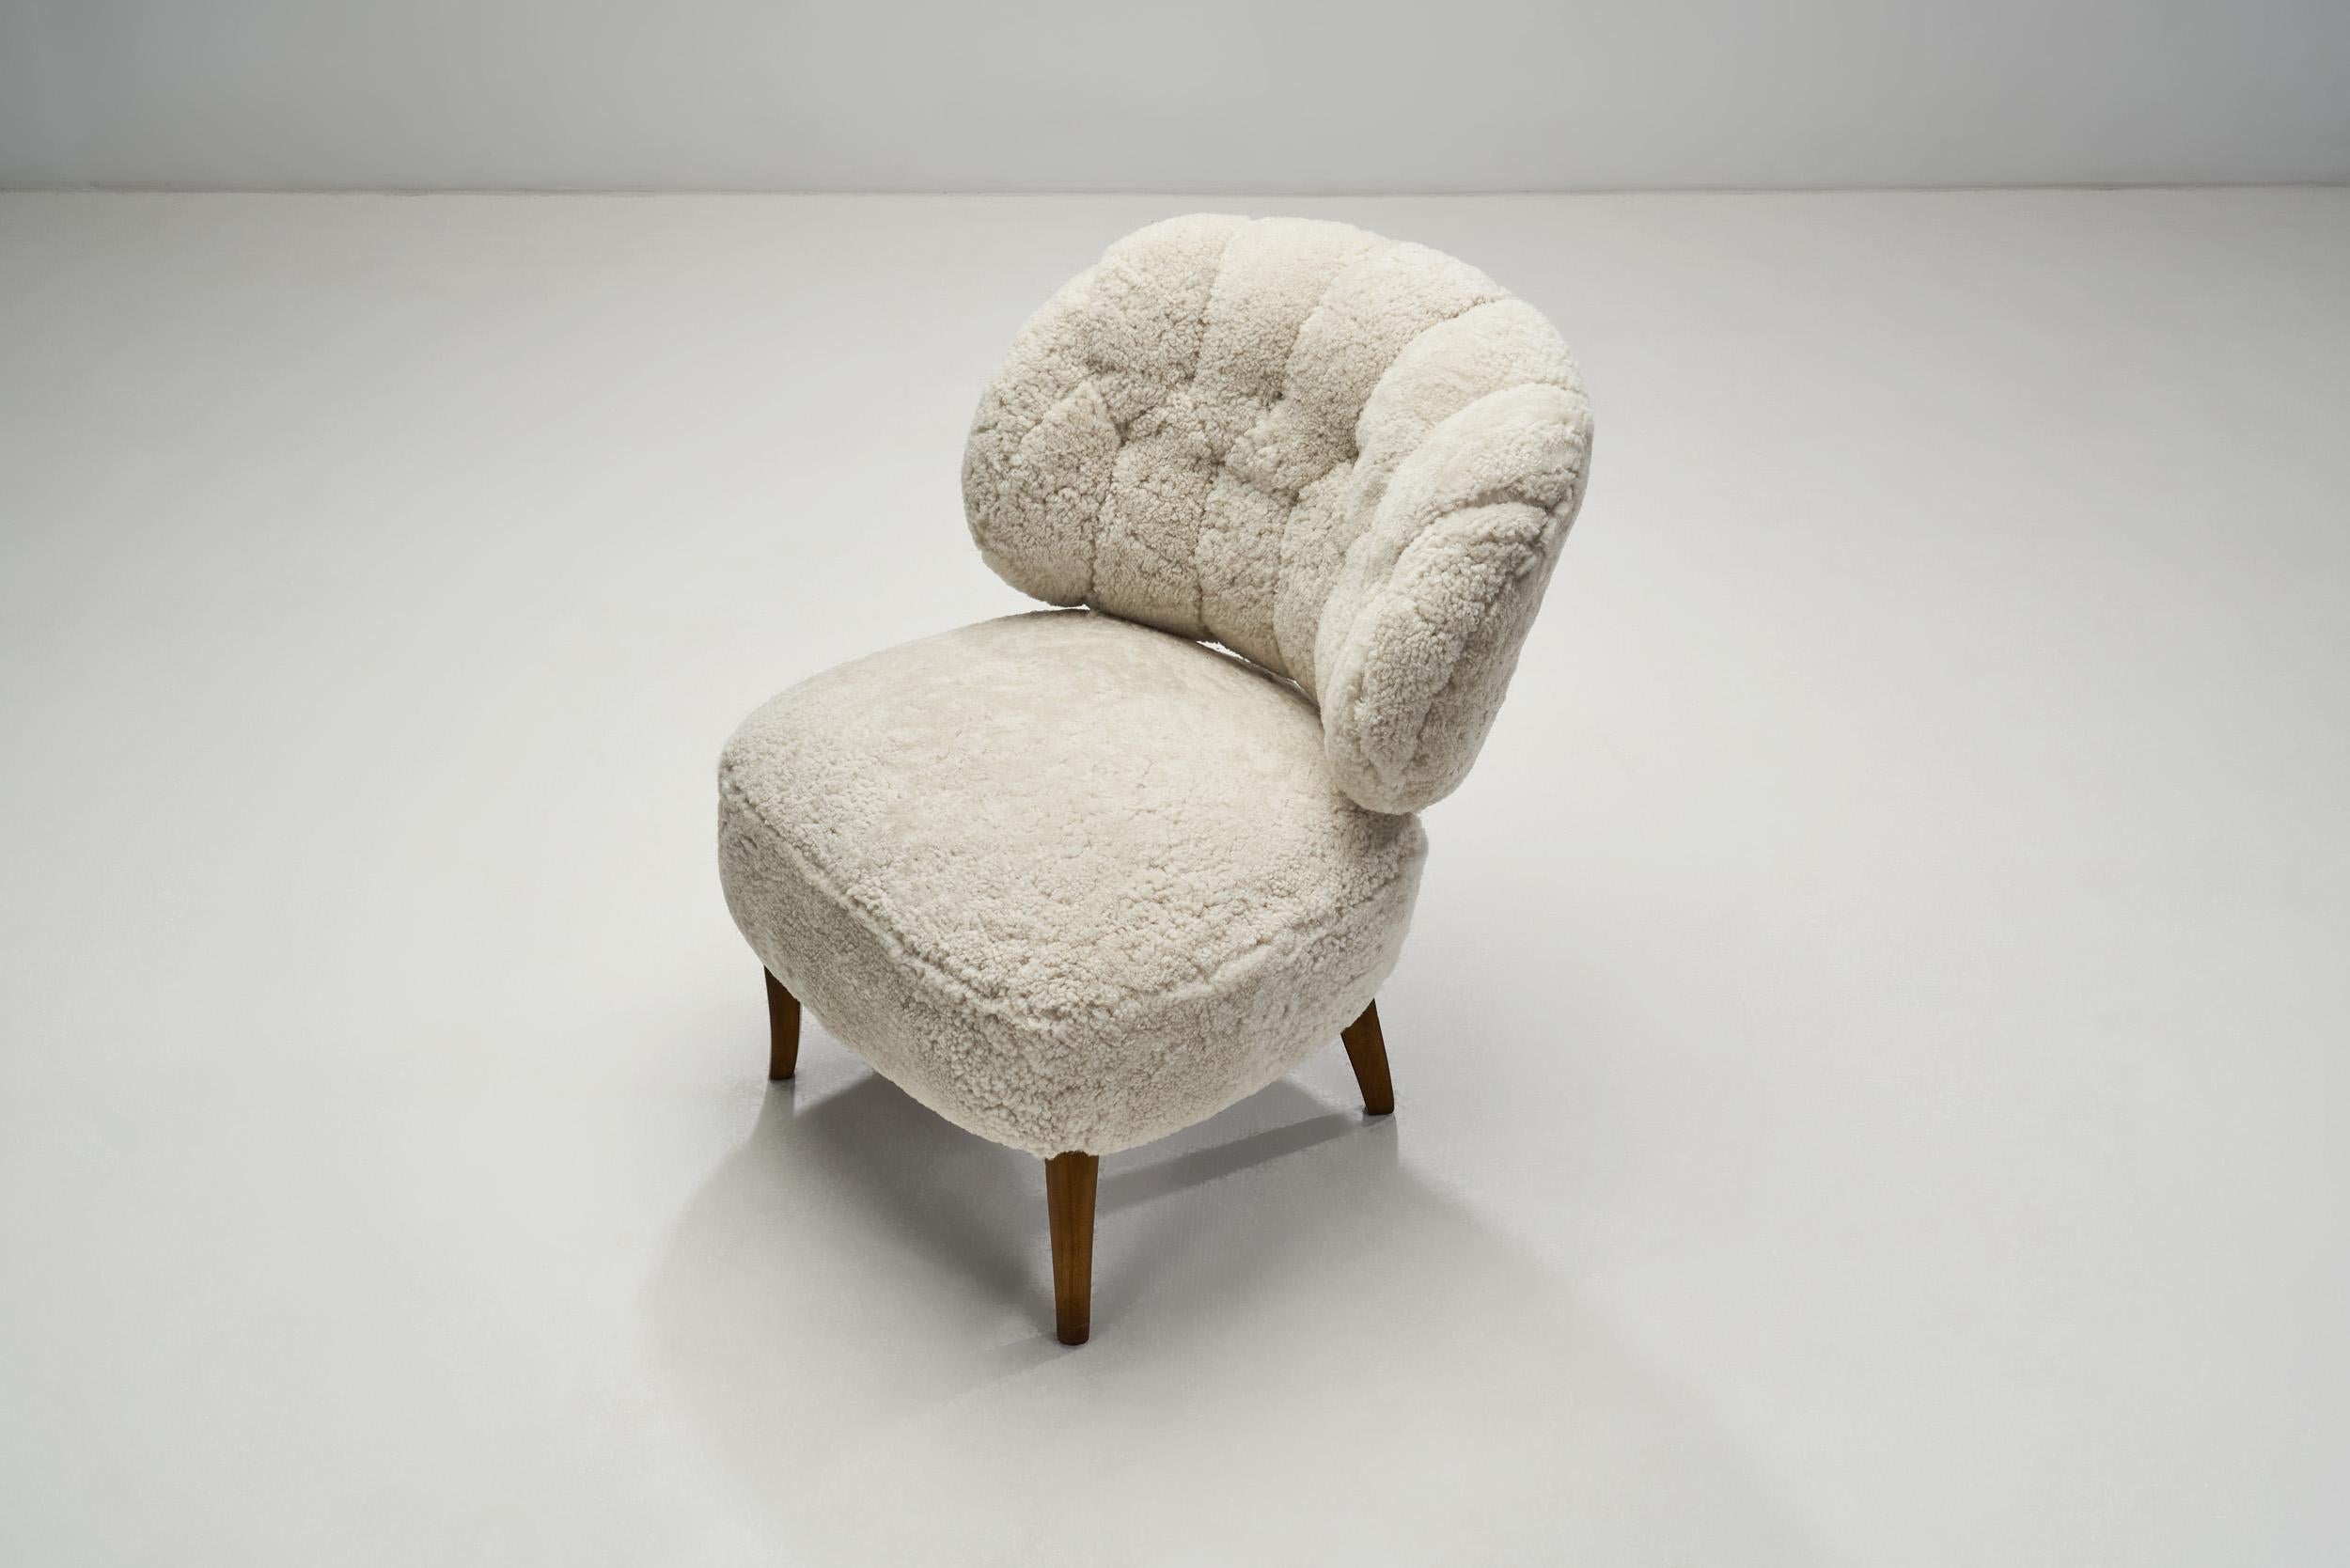 Scandinavian Modern Mid-Century “Gamla Berlin” Easy Chair by Carl Malmsten, Sweden 1940s For Sale